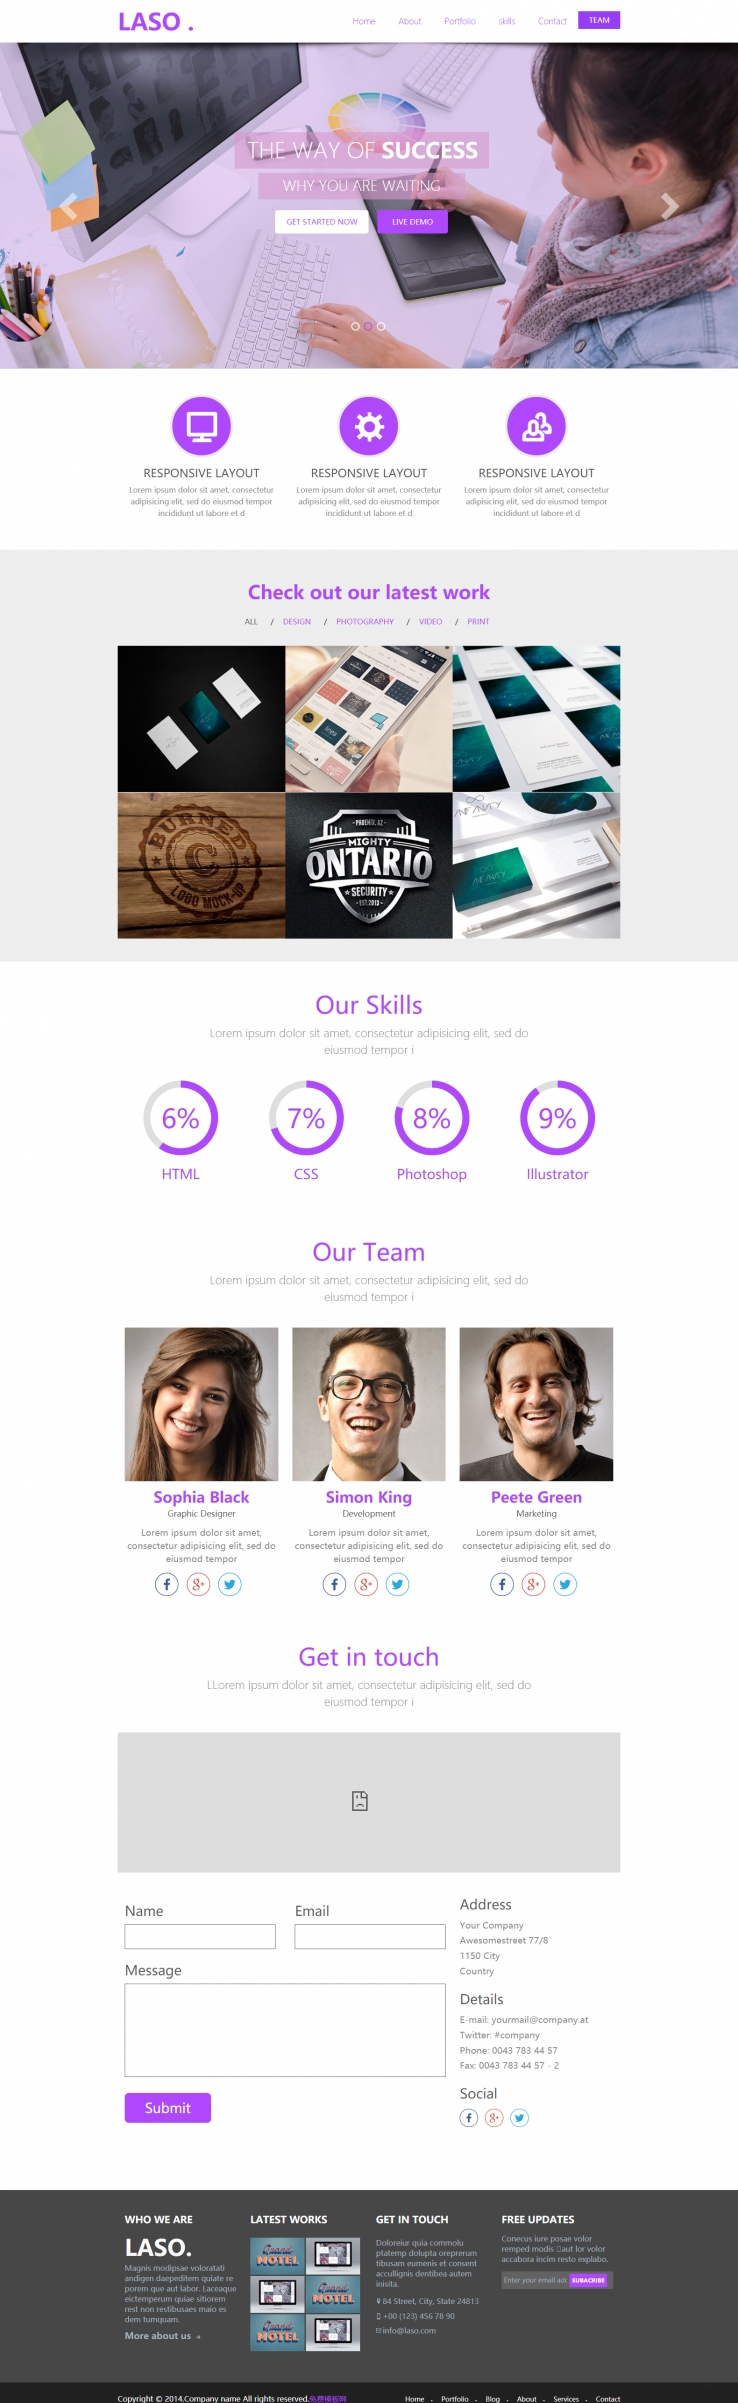 紫色简洁风格的企业网站案例展示模板